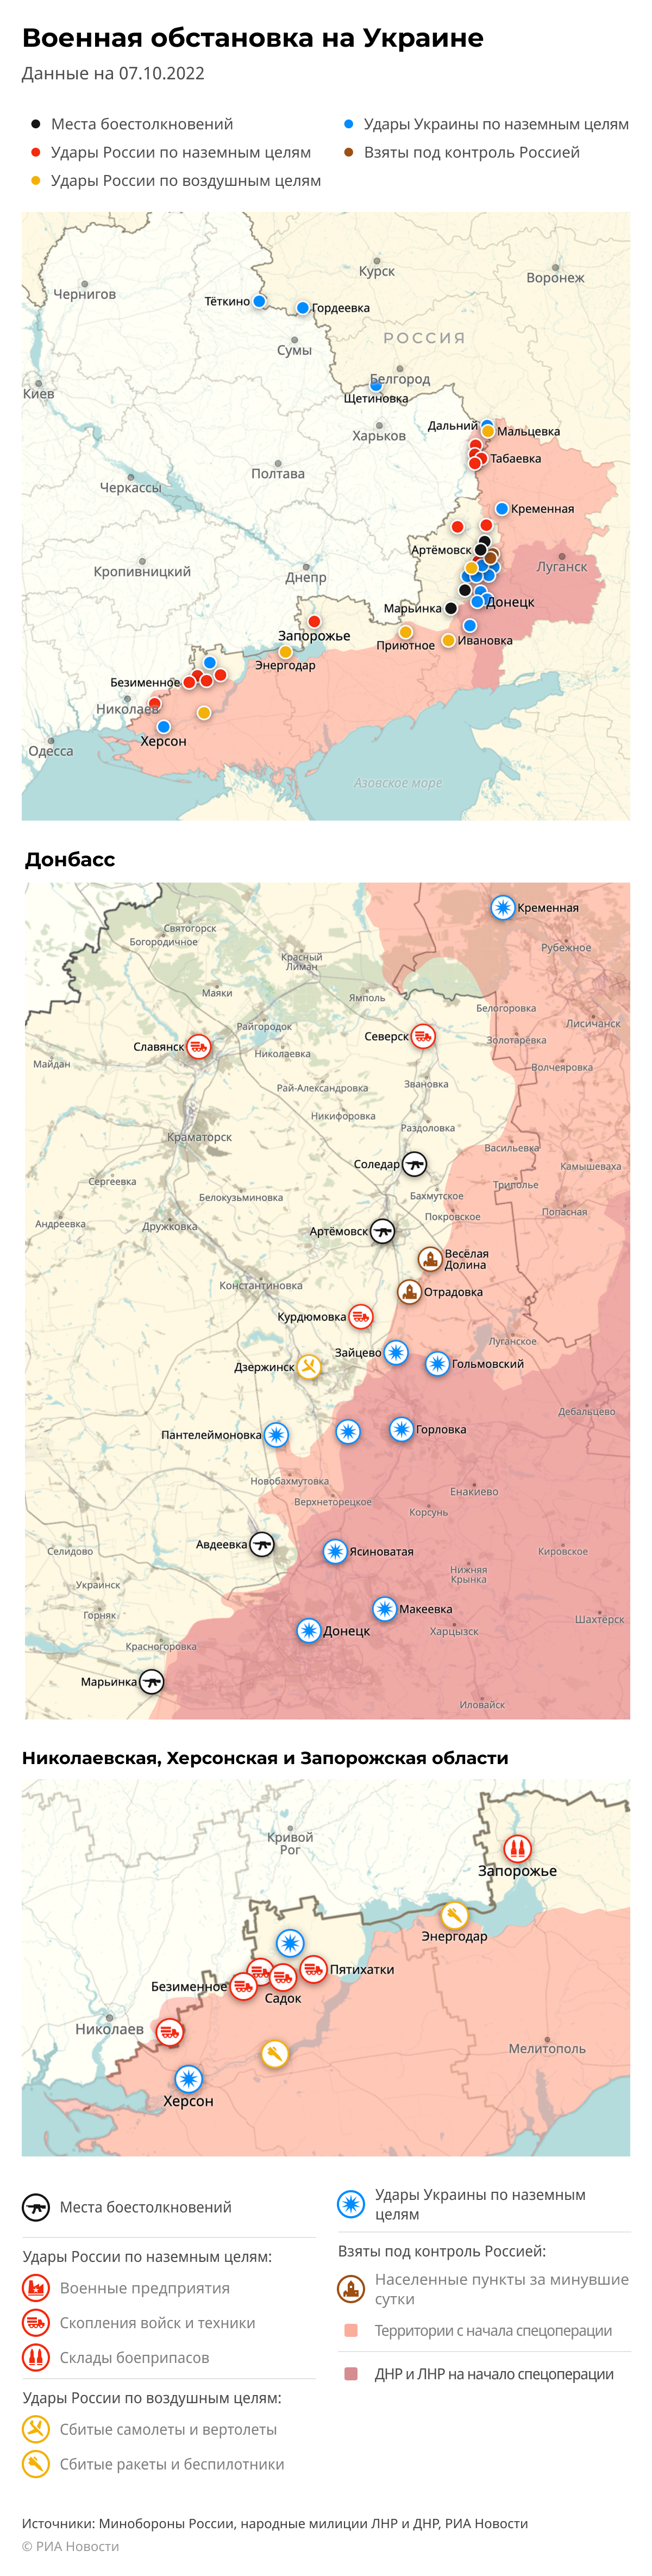 Карта спецоперации Вооруженных сил России на Украине на 07.10.2022